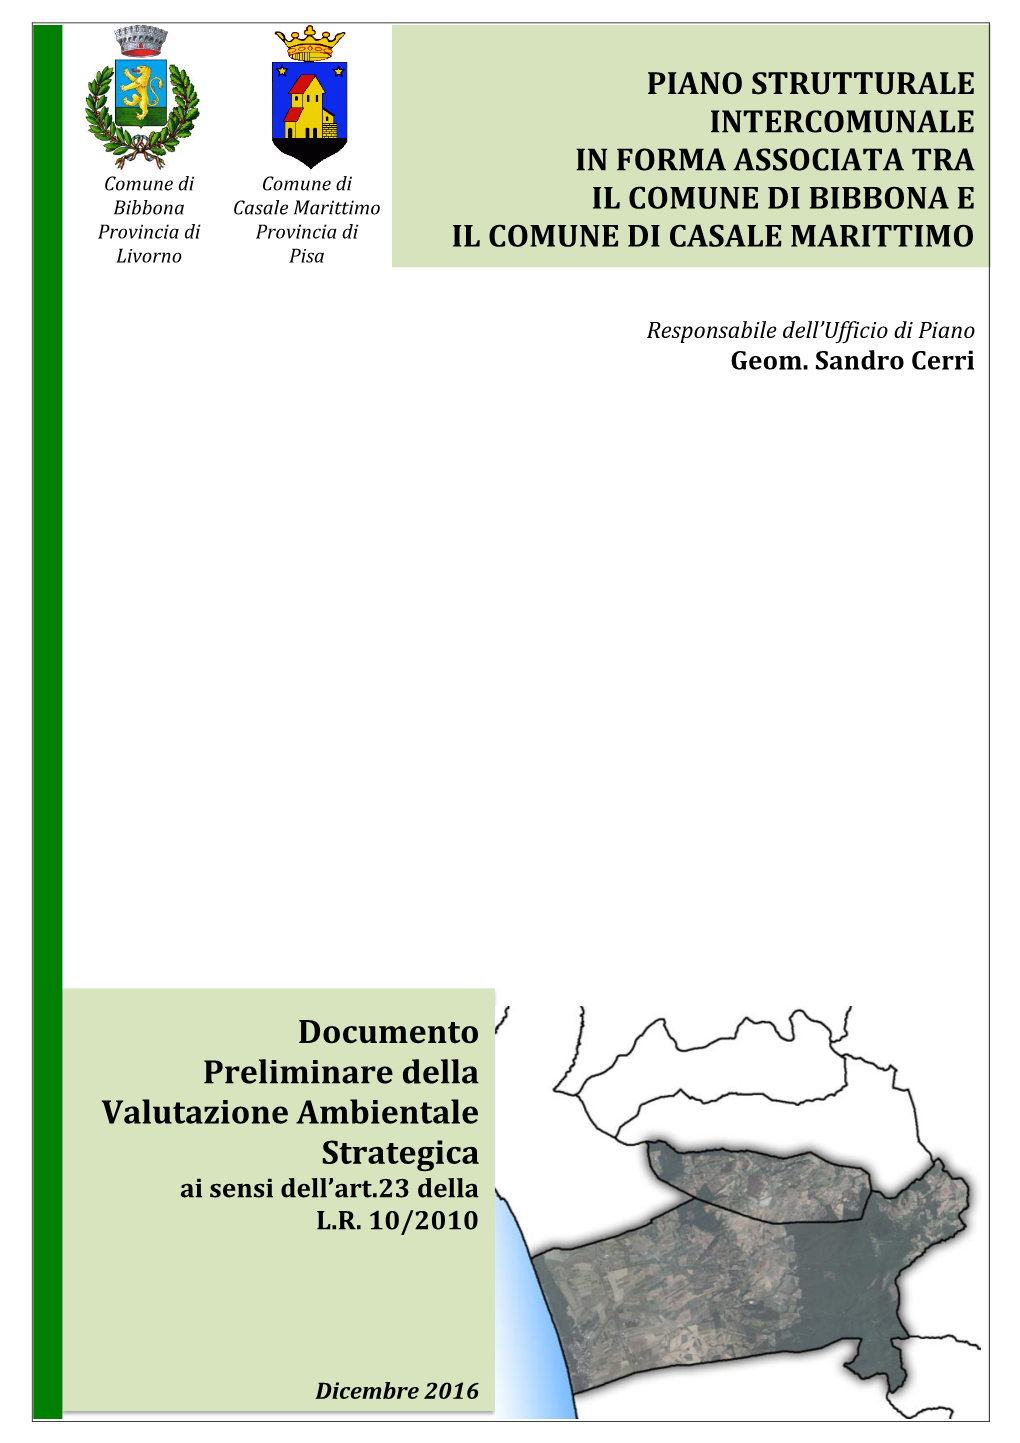 Documento Preliminare Della Valutazione Ambientale Strategica Ai Sensi Dell’Art.23 Della L.R